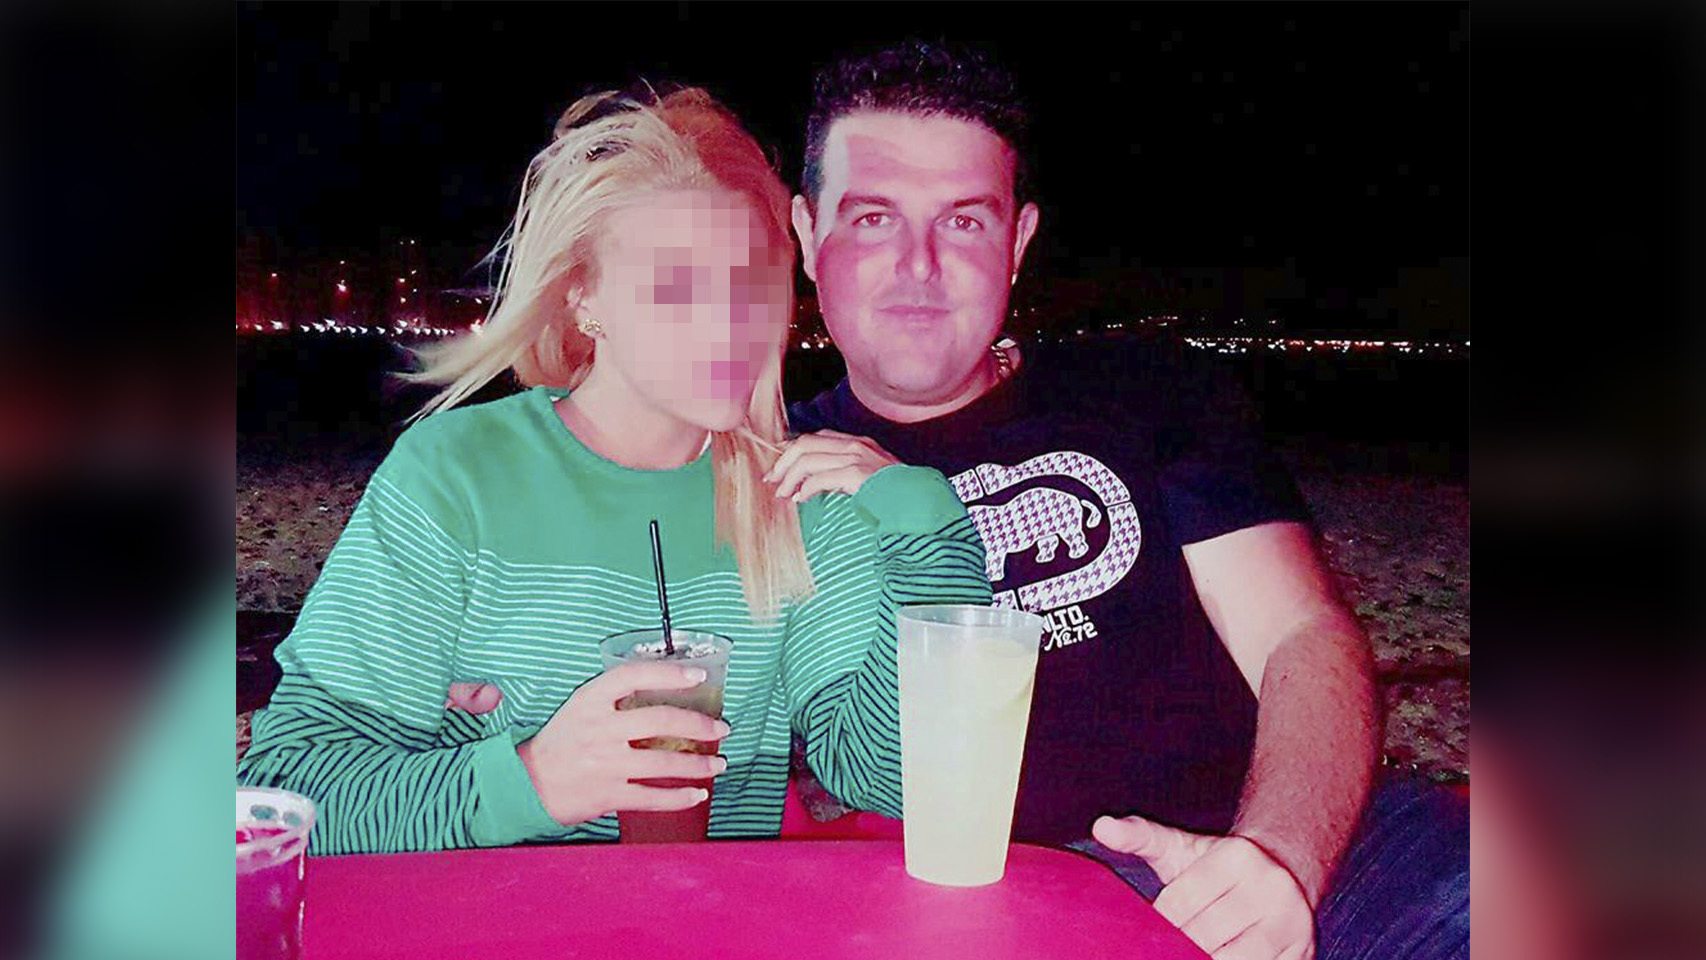 Julián, el acusado de difundir fotos de contenido sexual de su exnovia tras romperse la relación